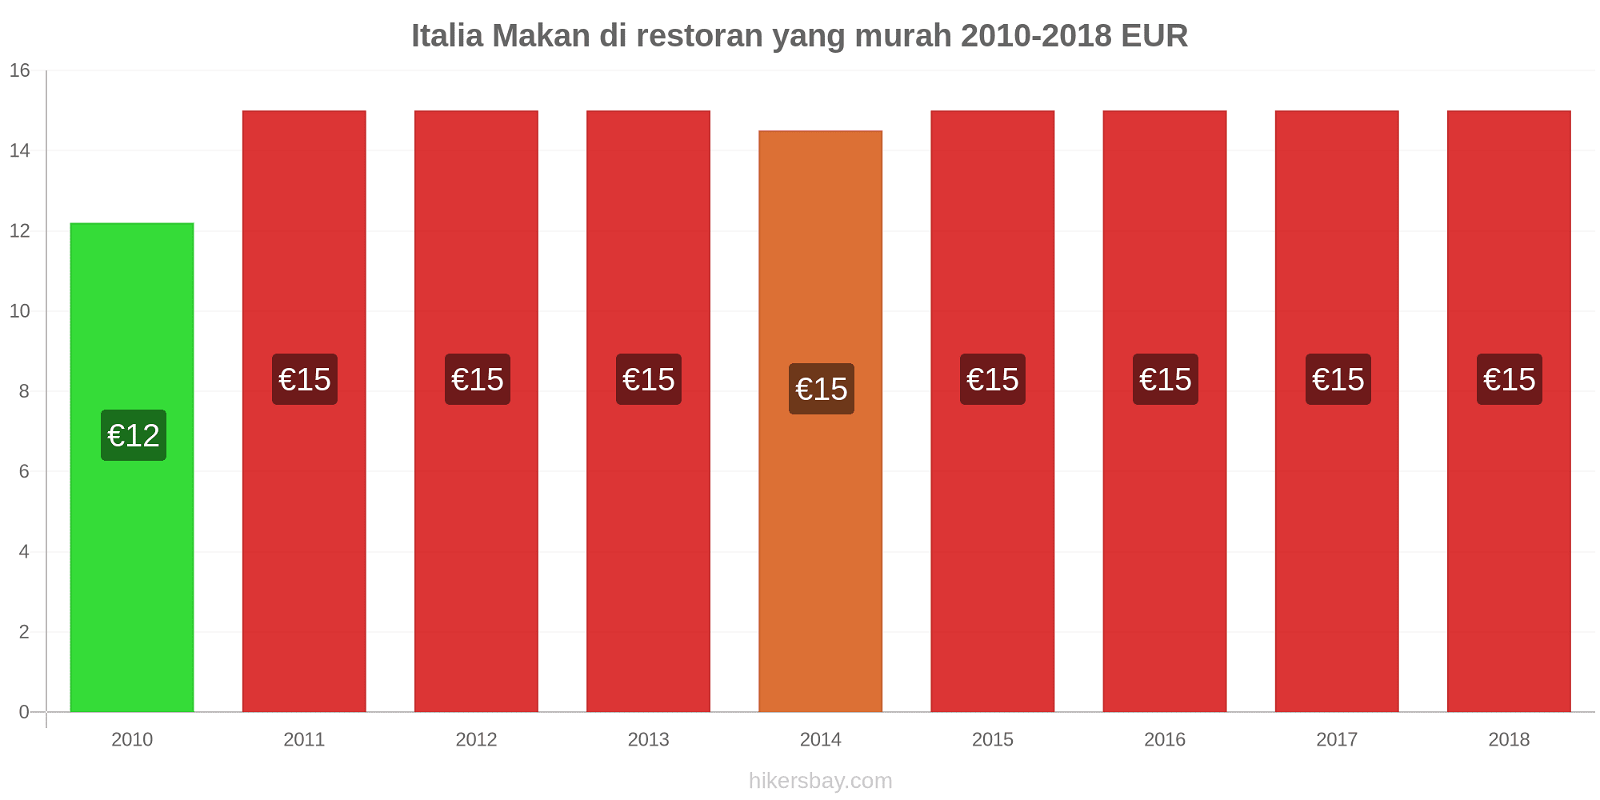 Italia perubahan harga Makan di restoran yang terjangkau hikersbay.com